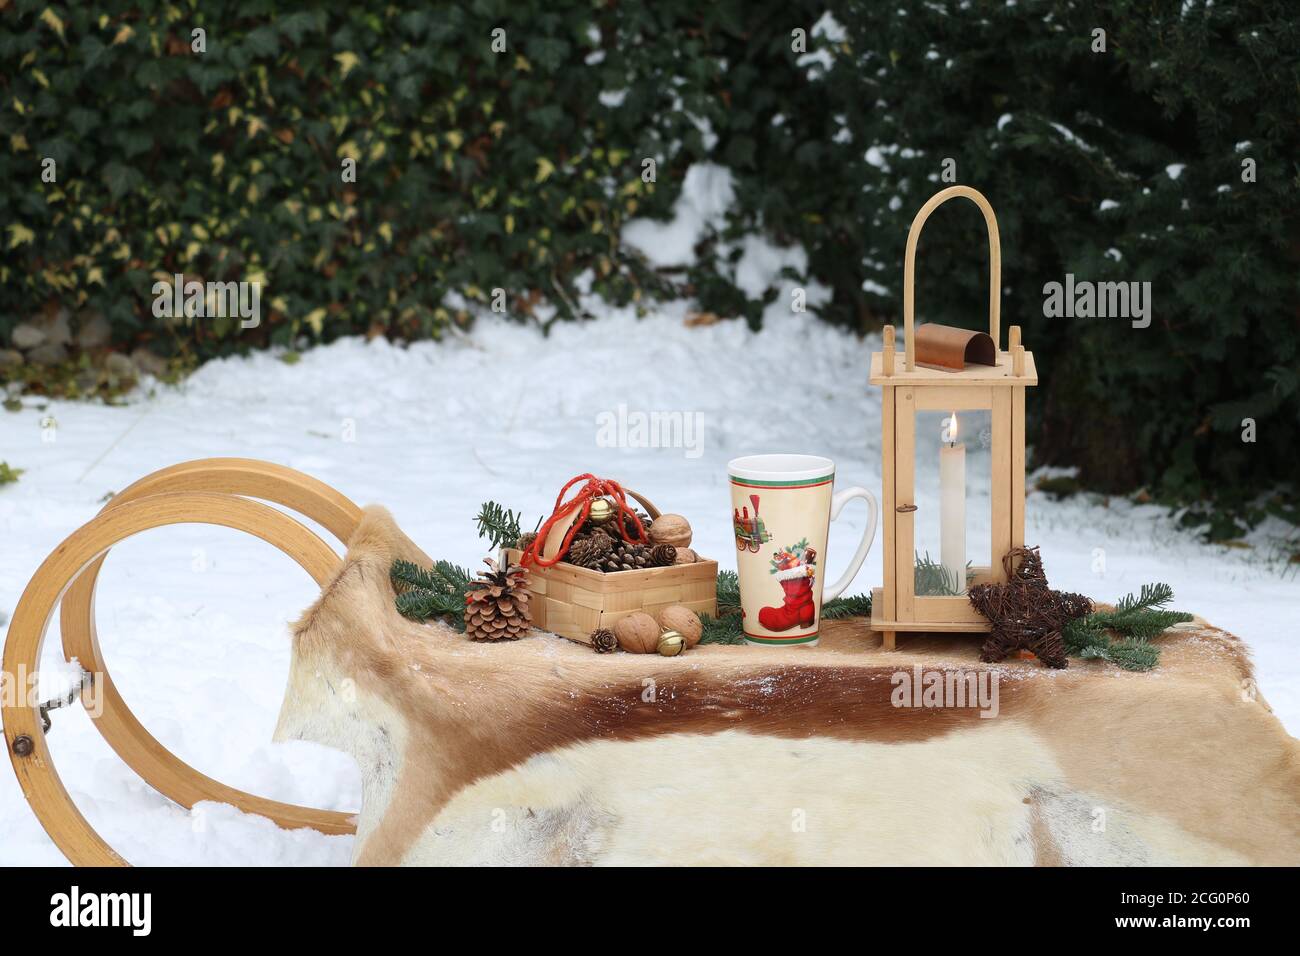 decoración navideña con trineos, faroles y conos Foto de stock